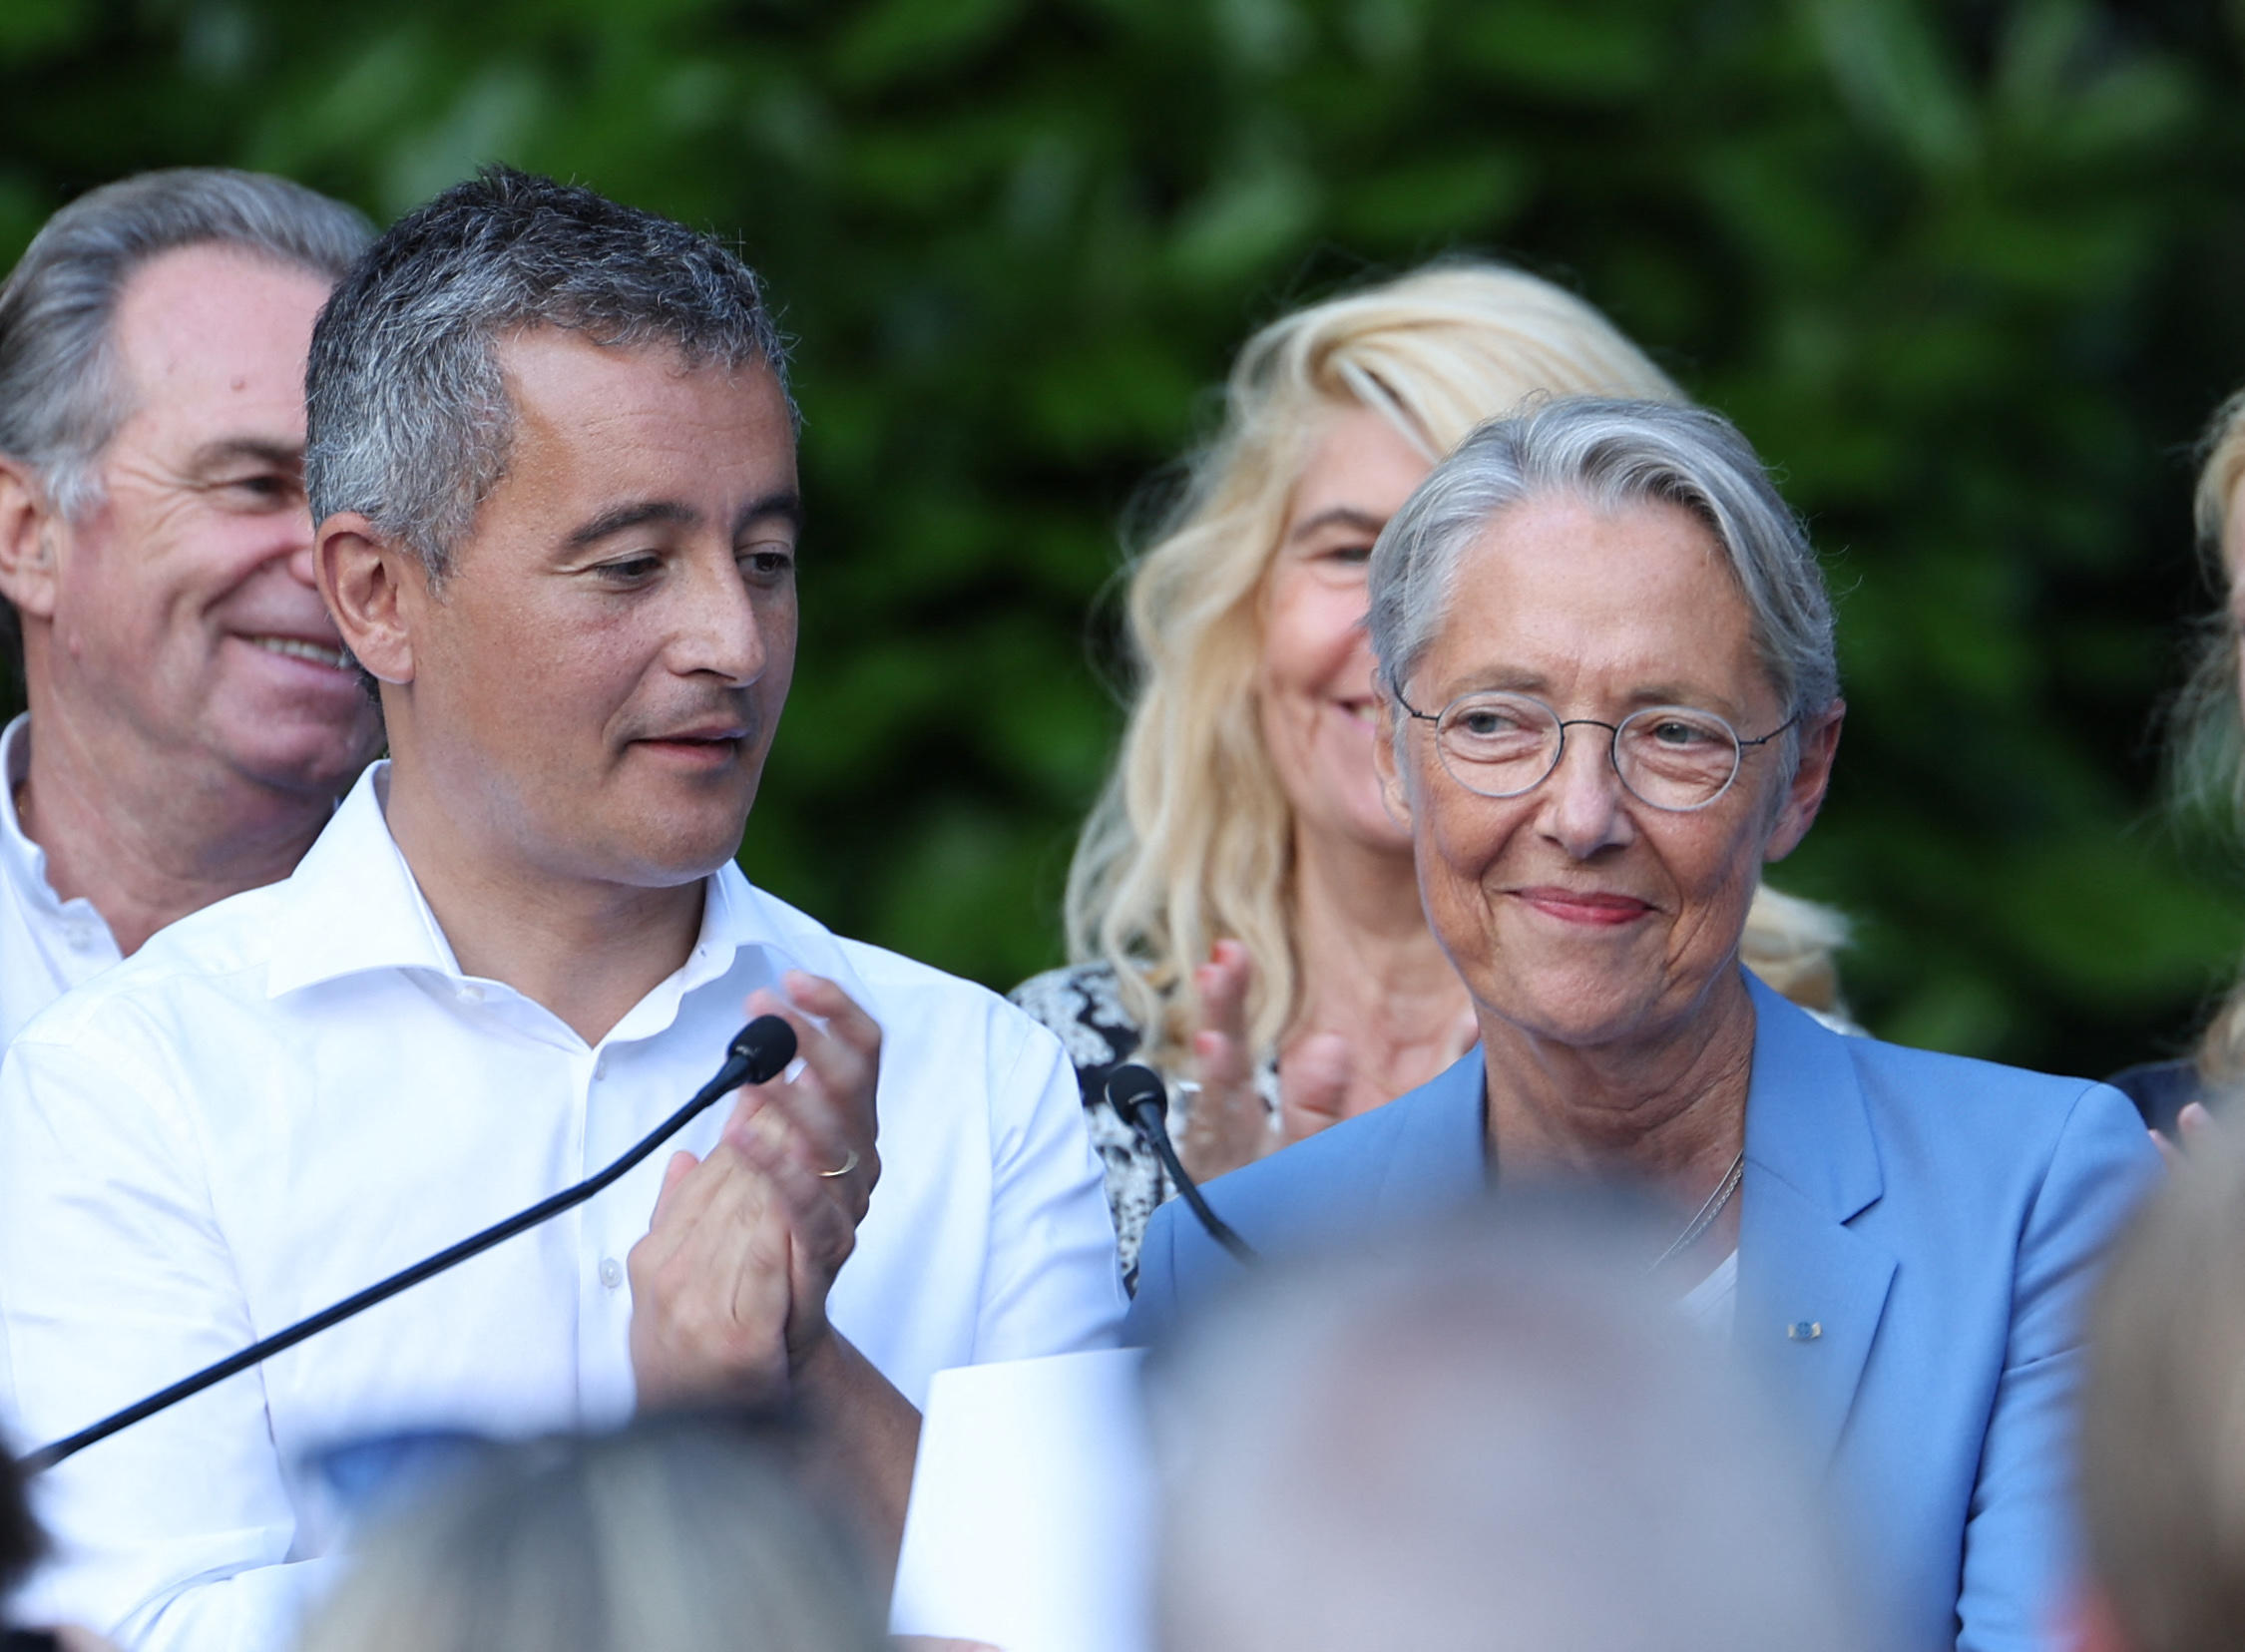 La Première ministre Élisabeth Borne a été accueillie par Gérald Darmanin dans son fief de Tourcoing (Nord). AFP/François Lo Presti